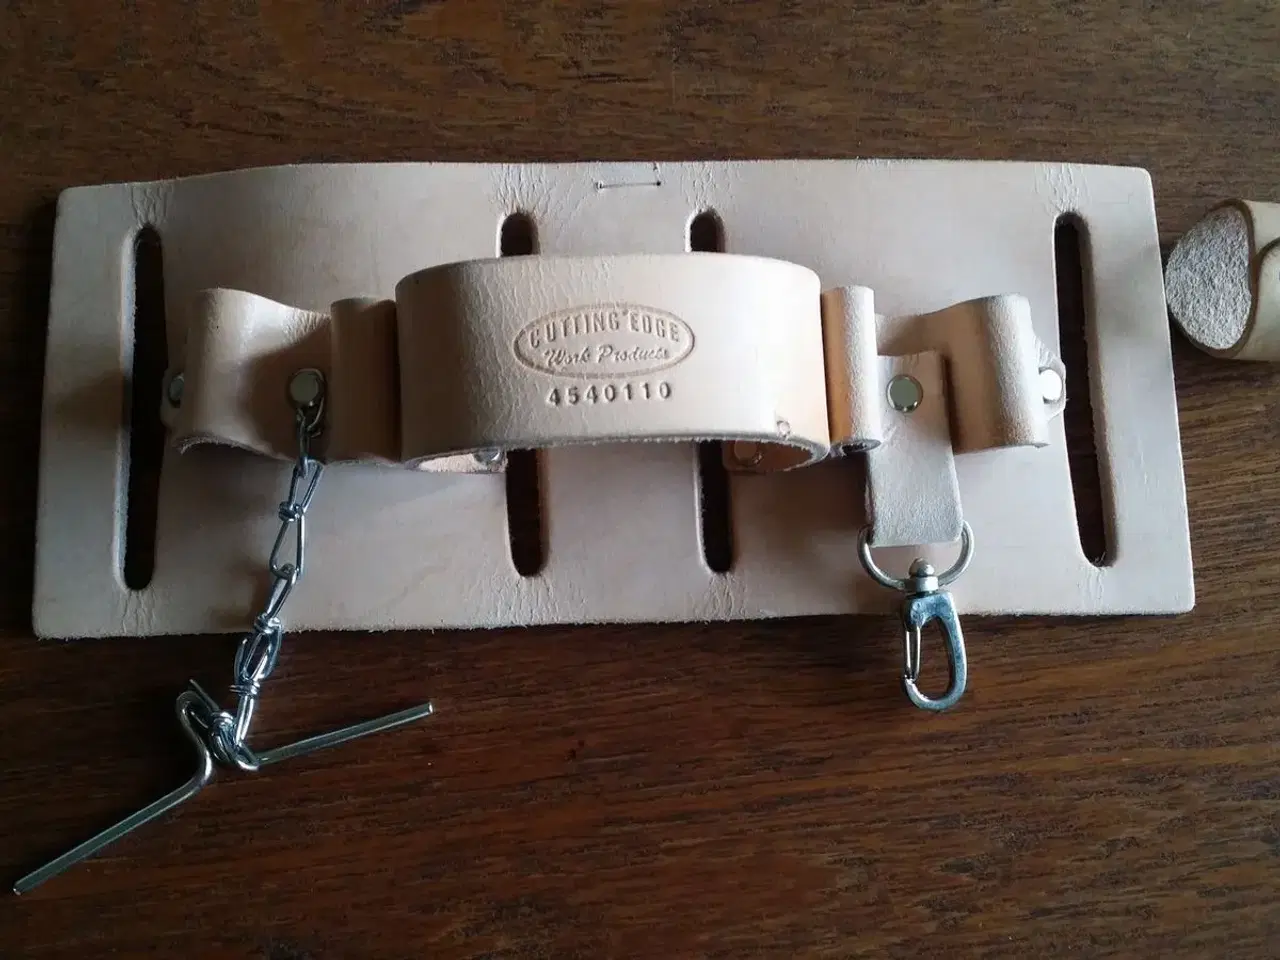 Billede 1 - Spejderudstyr; tool belt og tørklædering